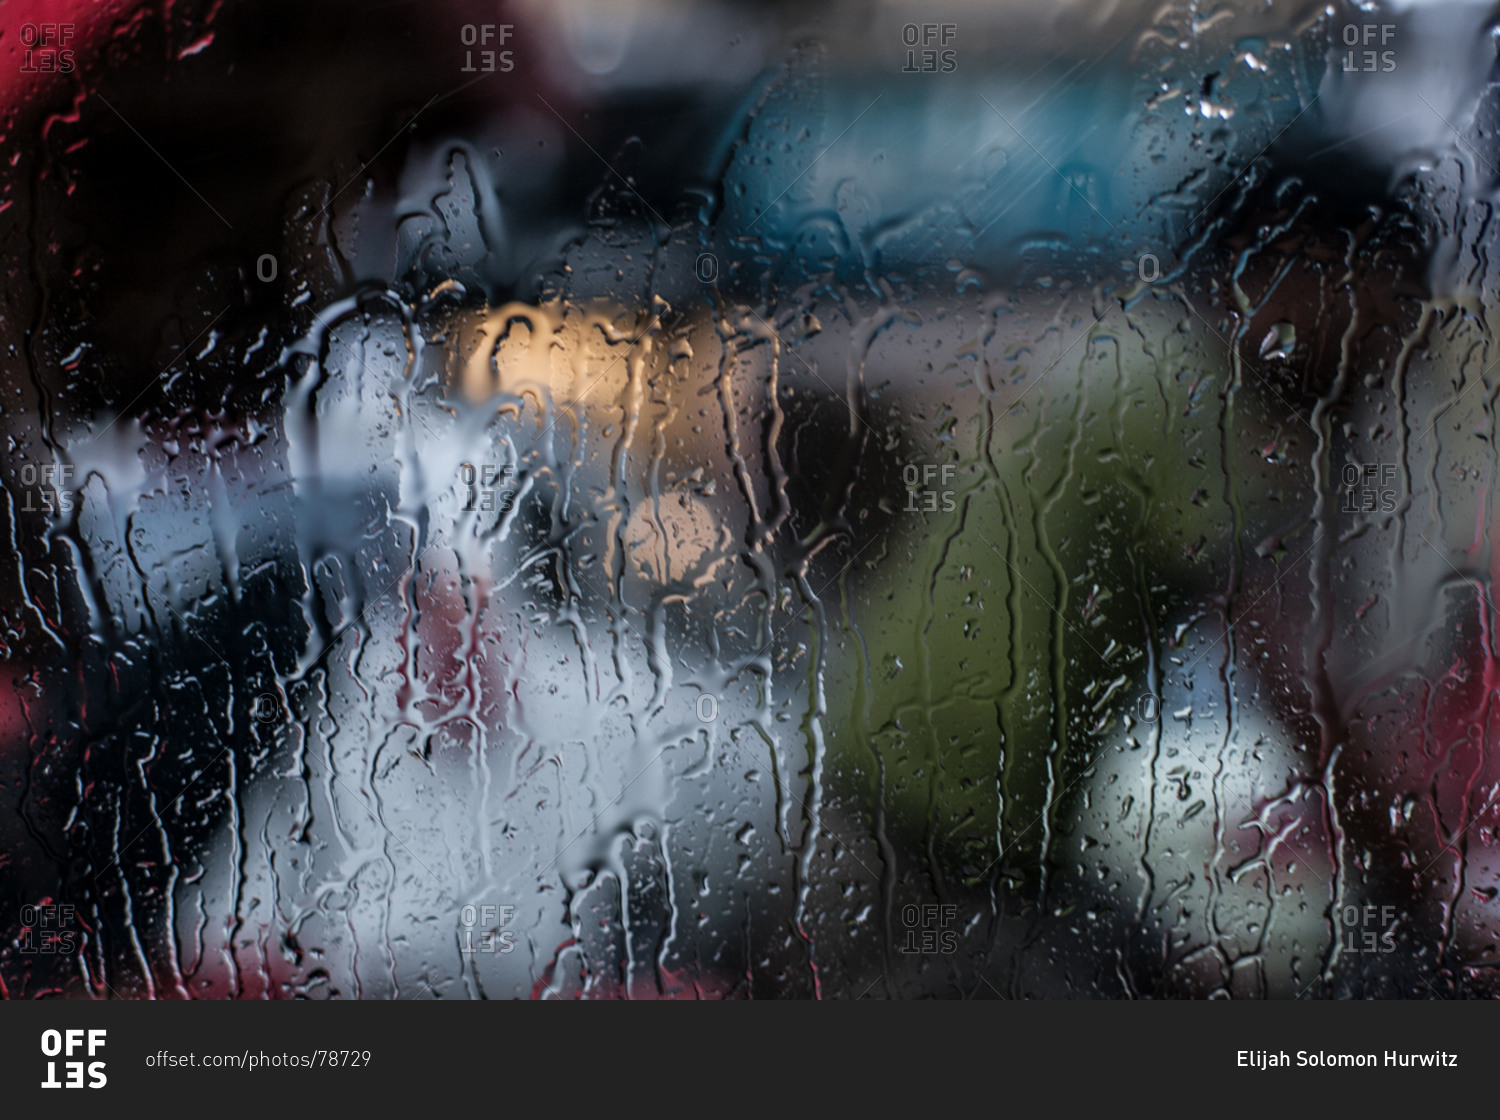 Rain soaked window silhouettes a tuk-tuk driver in New Delhi